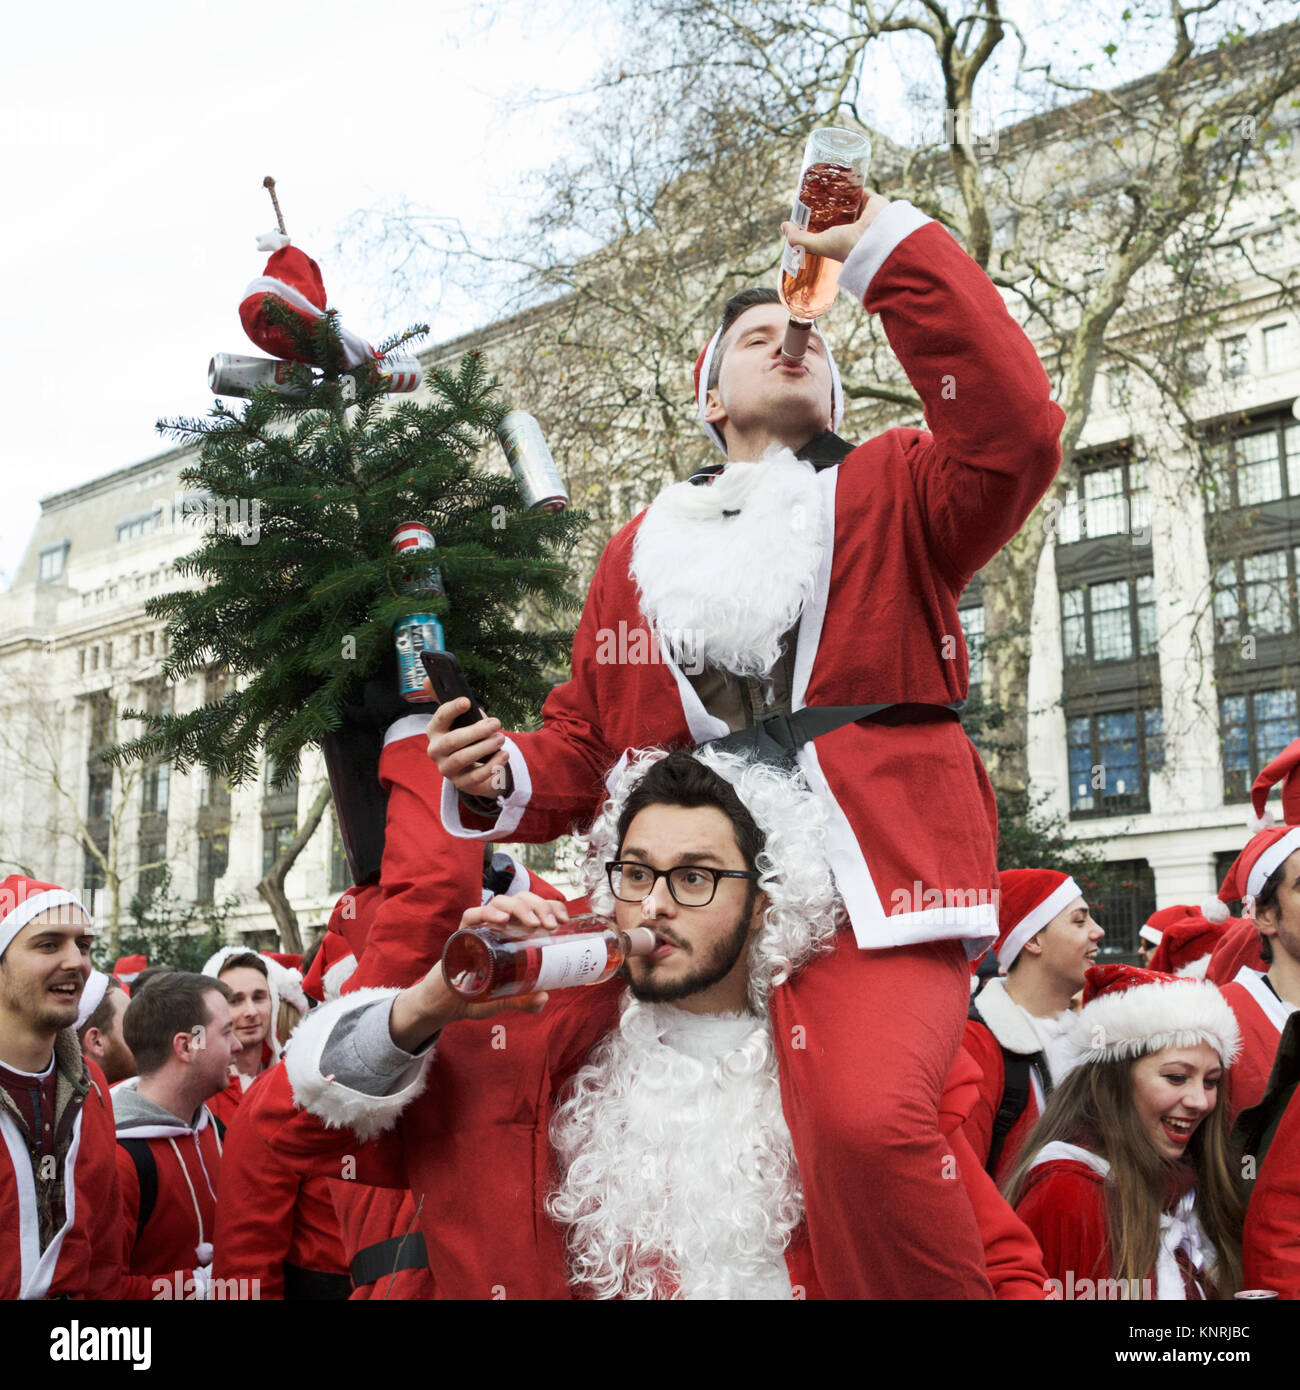 Santacon London, Großbritannien. Zwei Santas, die Alkohol trinken. Weihnachtsstimmung. Weihnachten Alkohol trinken. Millennials trinken Alkohol. Weihnachtsdrink. Stockfoto